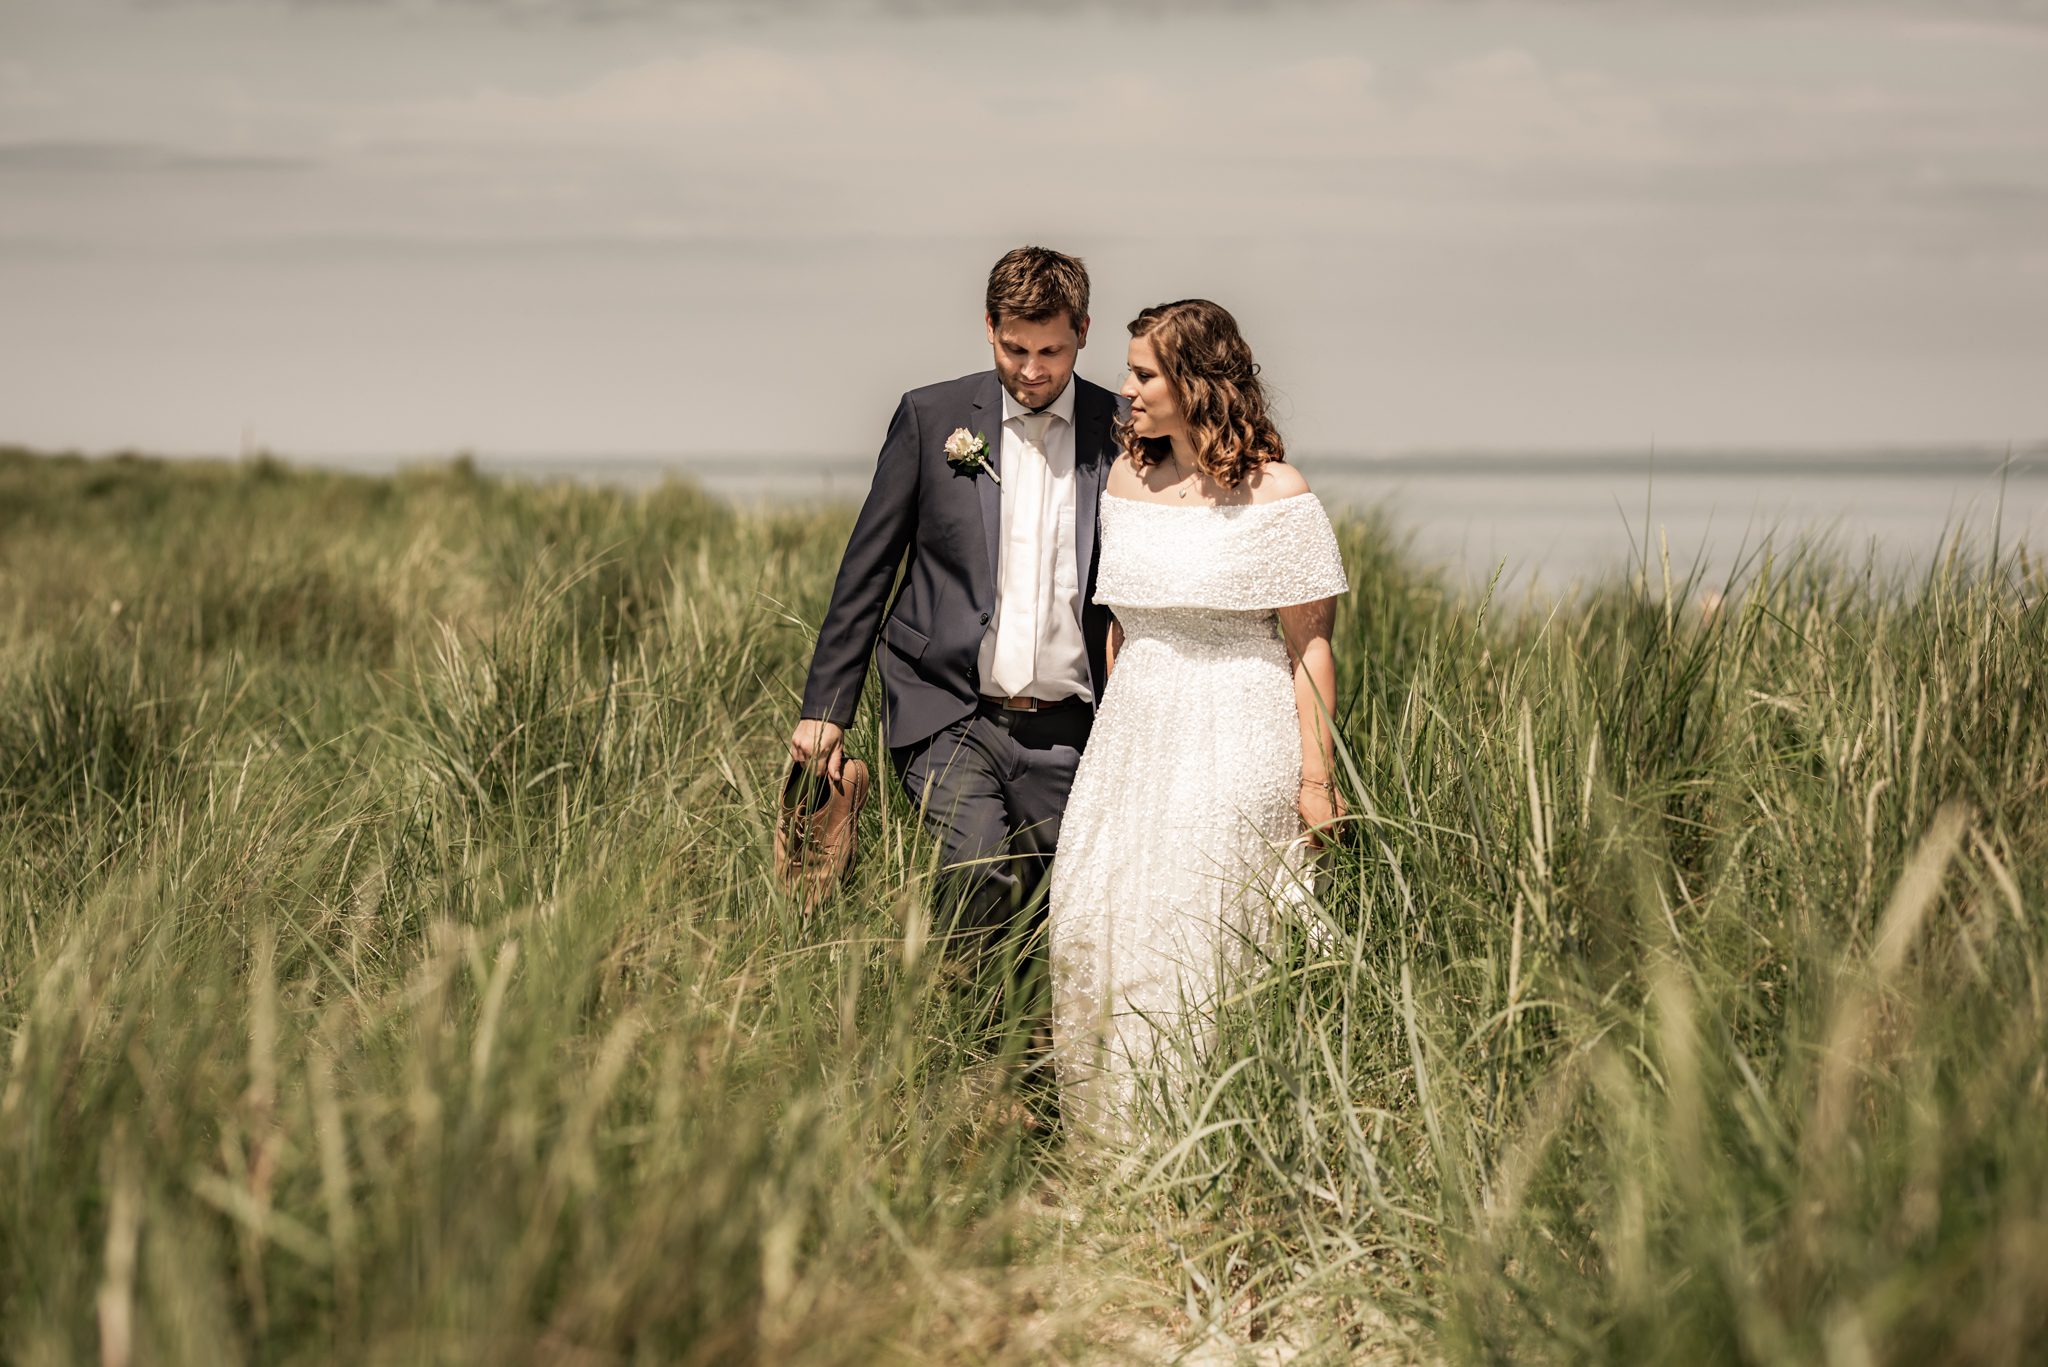 Janine und Sebastian | Elopement Wedding in Hooksiel und Schillig 4